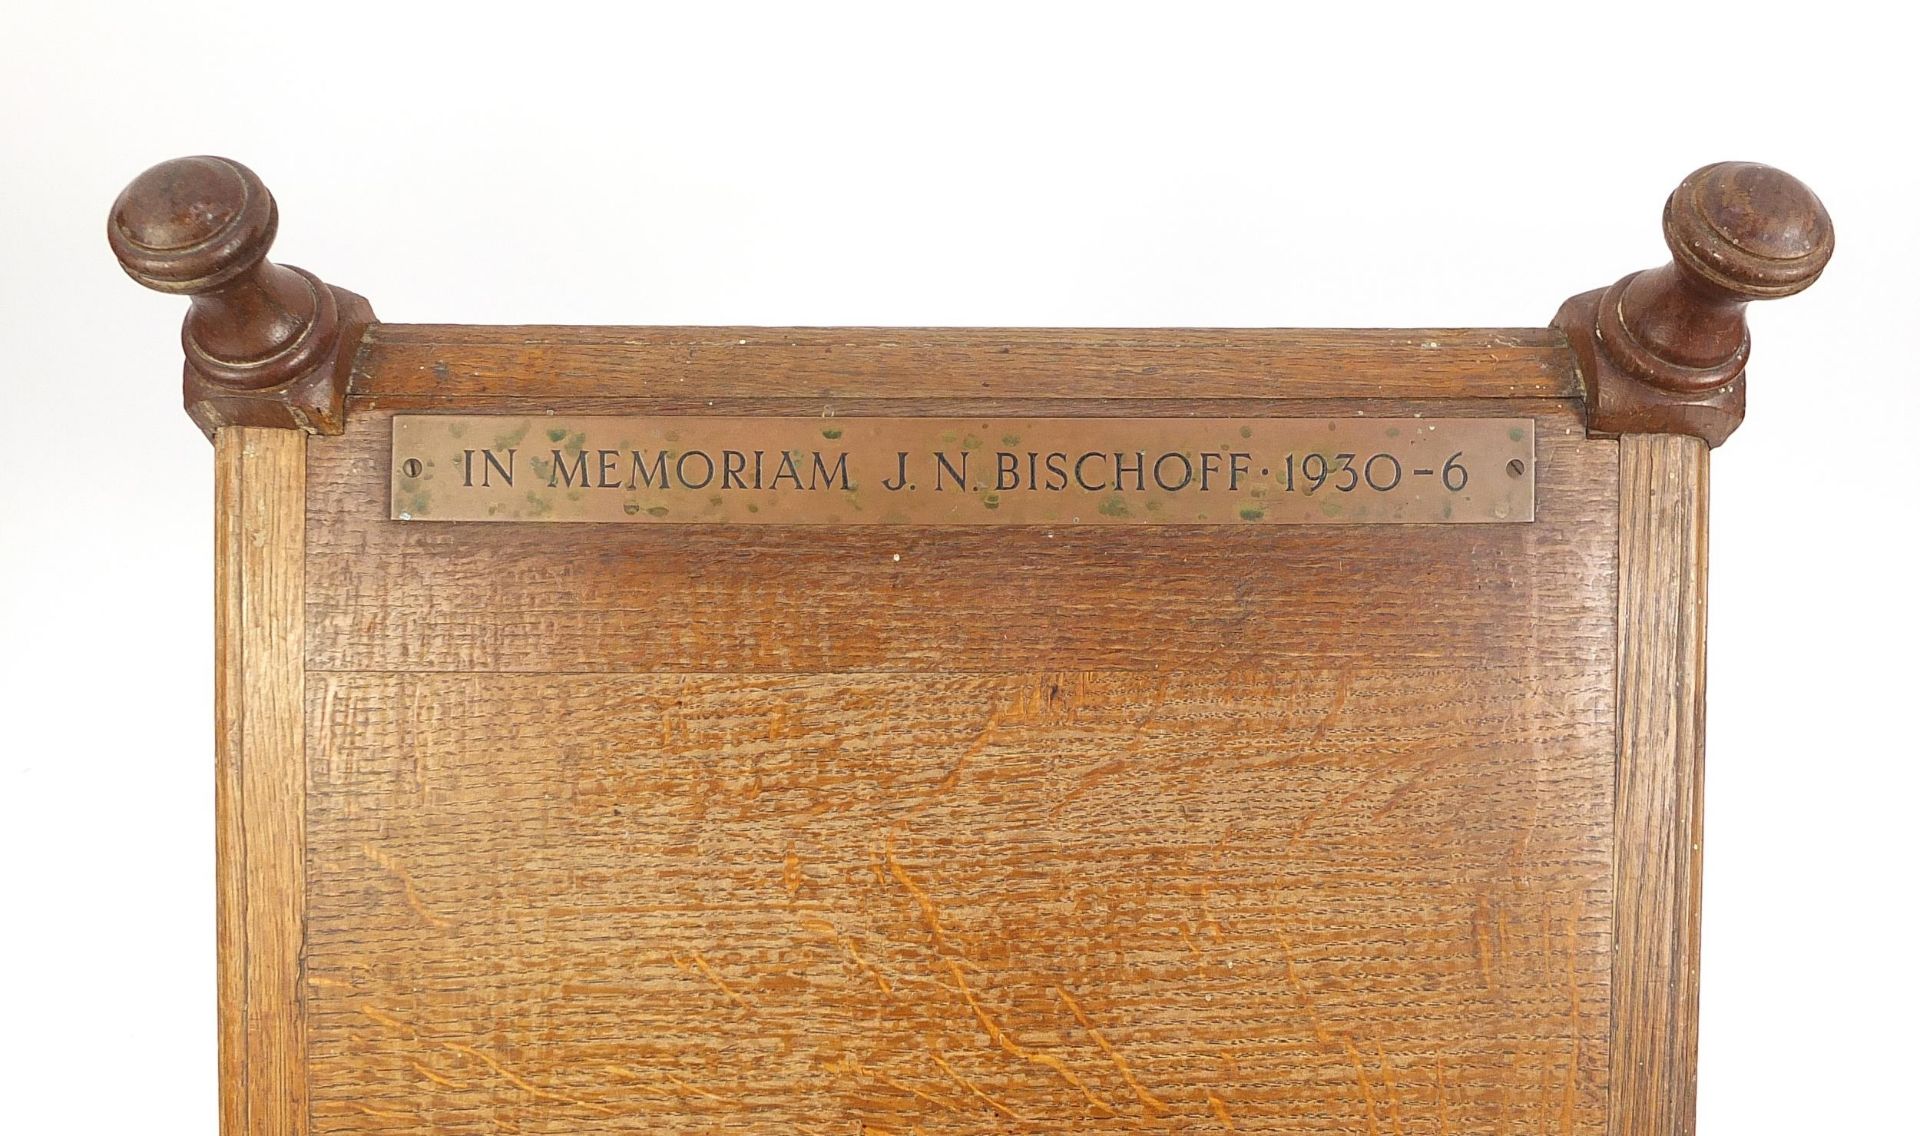 Gothic style oak low lectern with memorial plaque, 100cm H x 48.5cm W x 33.5cm D - Image 4 of 5